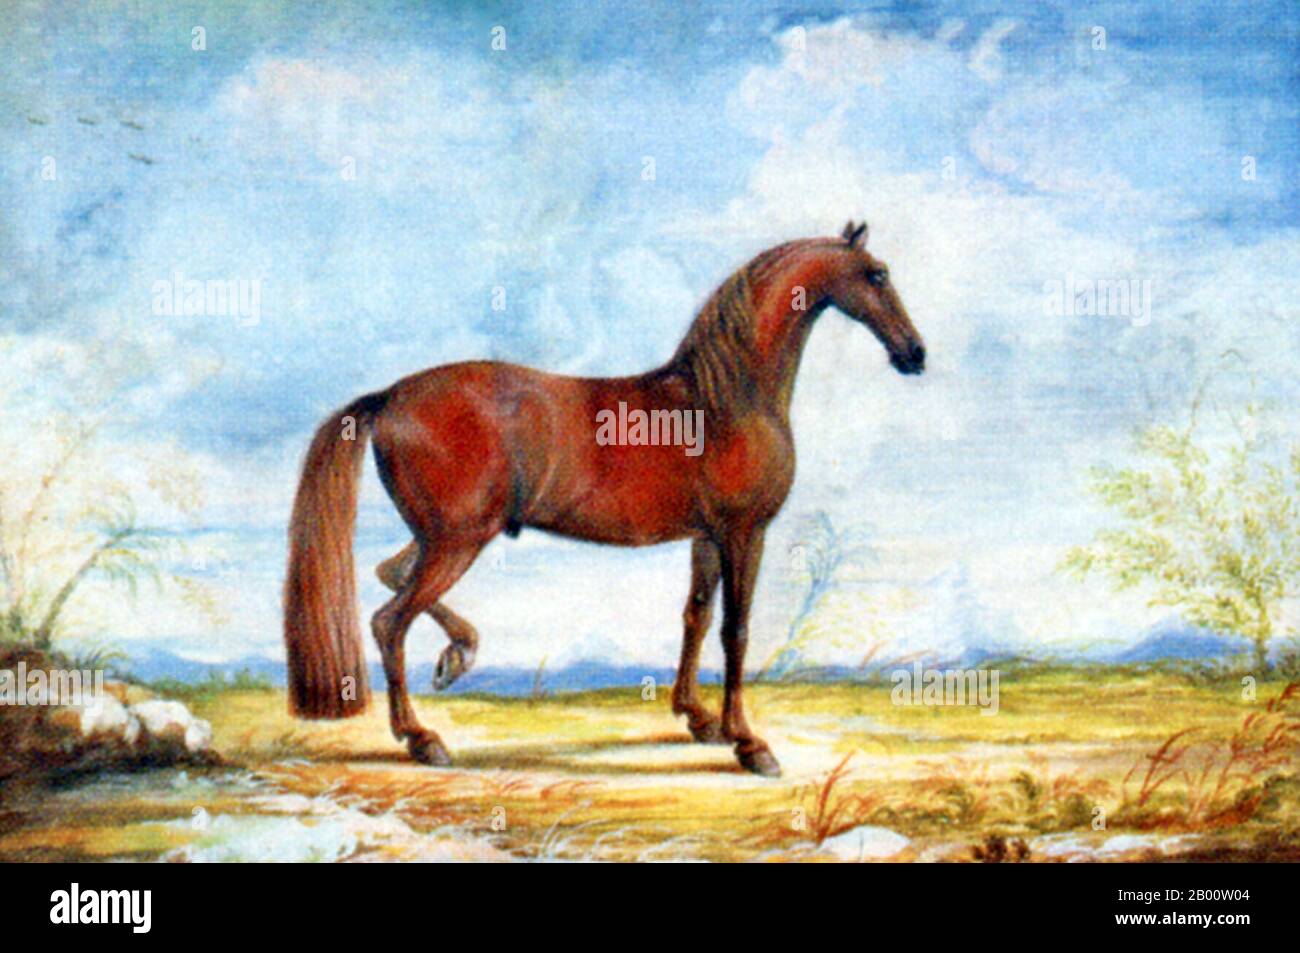 Espagne/Tunisie: Portrait d'un cheval de Barb dans une école d'équitation espagnole. Peinture aquarelle du Baron Reis d'Eisenberg (fl. 1730-1760), 18e siècle. Au cours de la période d’expansion arabe en Afrique du Nord, la cavalerie était souvent montée sur de petits chevaux agiles appelés «berbères», ou «barbes». Connu pour sa vitesse, son endurance et son courage dans la guerre, le Barb était une composante importante des forces arabes. Banque D'Images